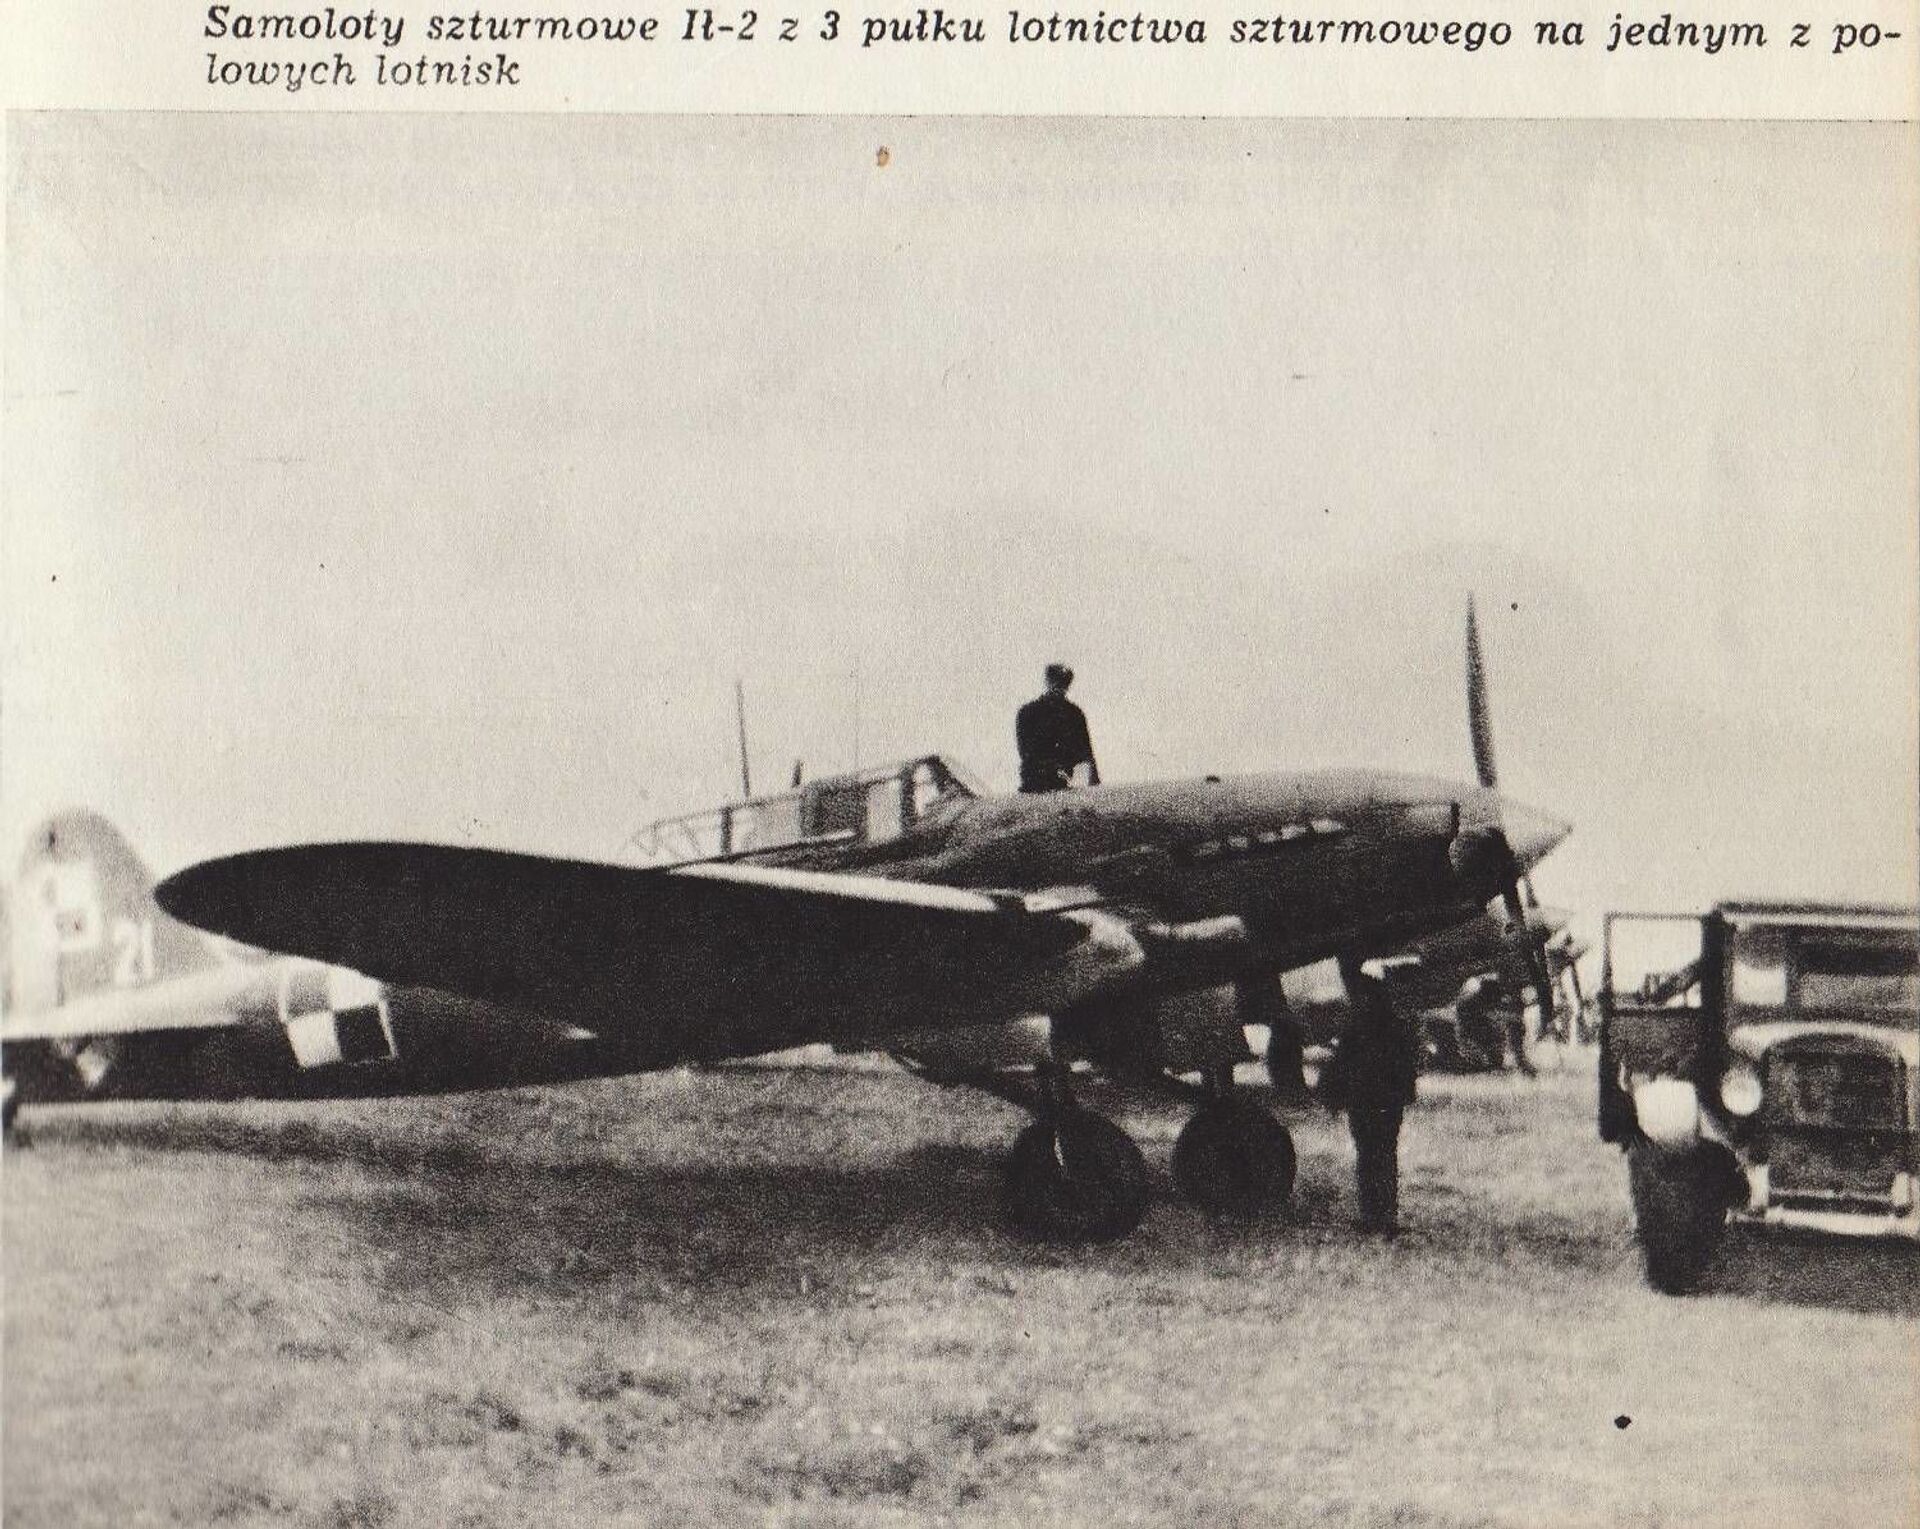 لقبت بـ الجزار أو الموت الطائر... طائرة سوفيتية أرعبت الألمان...صور وفيديو - سبوتنيك عربي, 1920, 10.03.2021